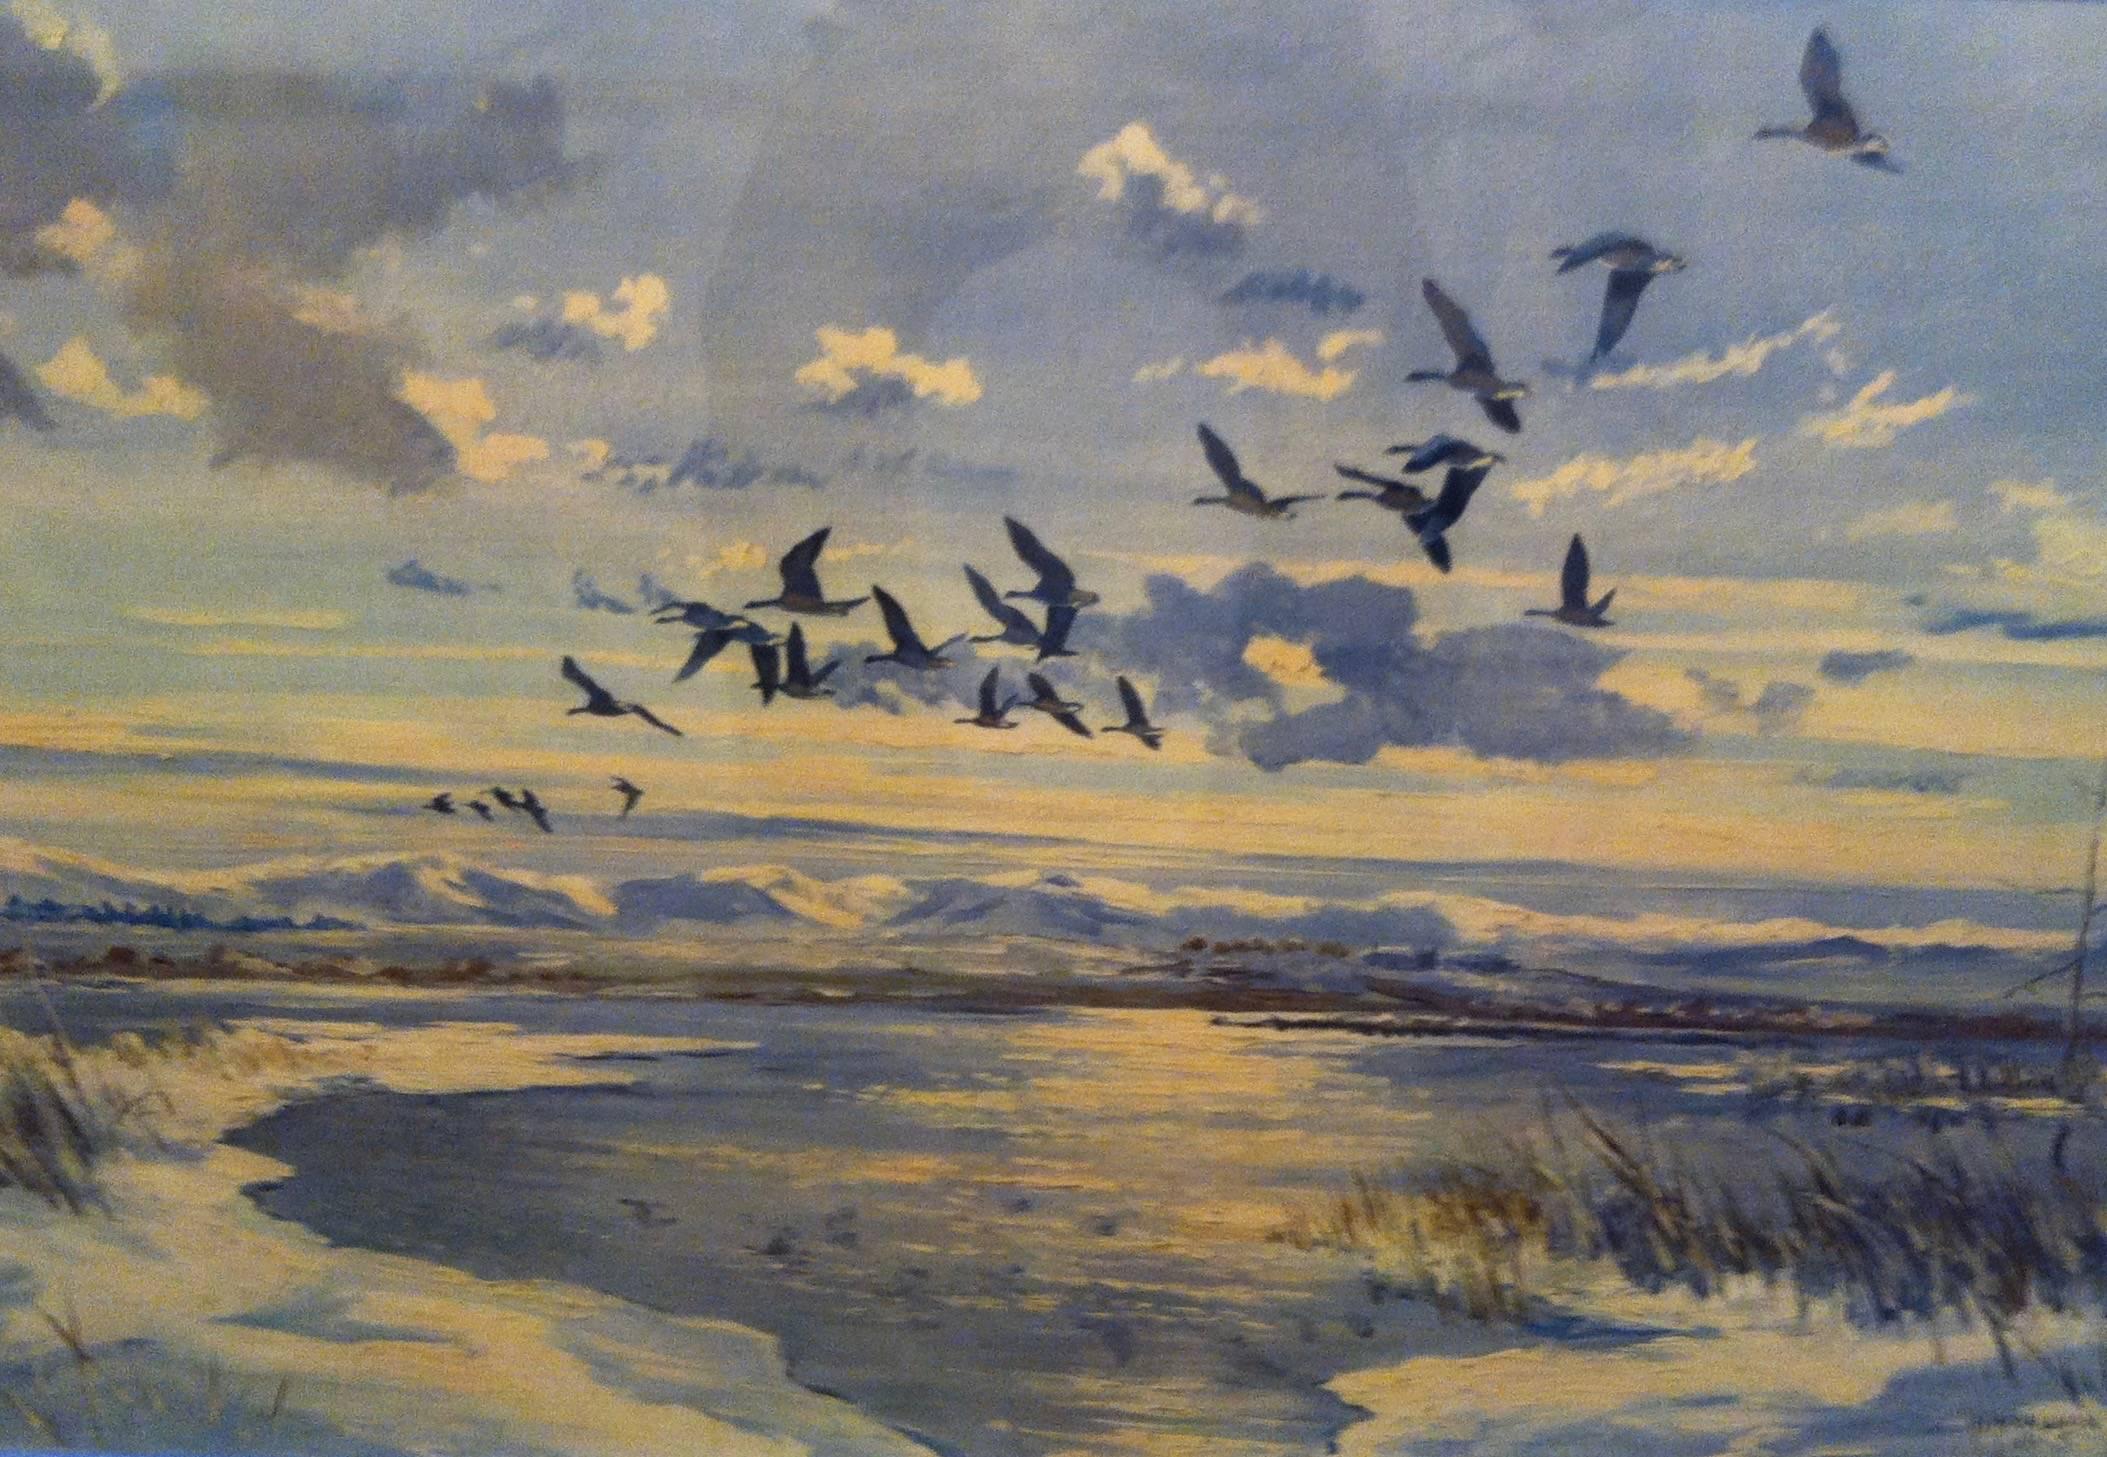 Landscape Art Hugh Monahan - Sporting Art - Oiseaux en vol